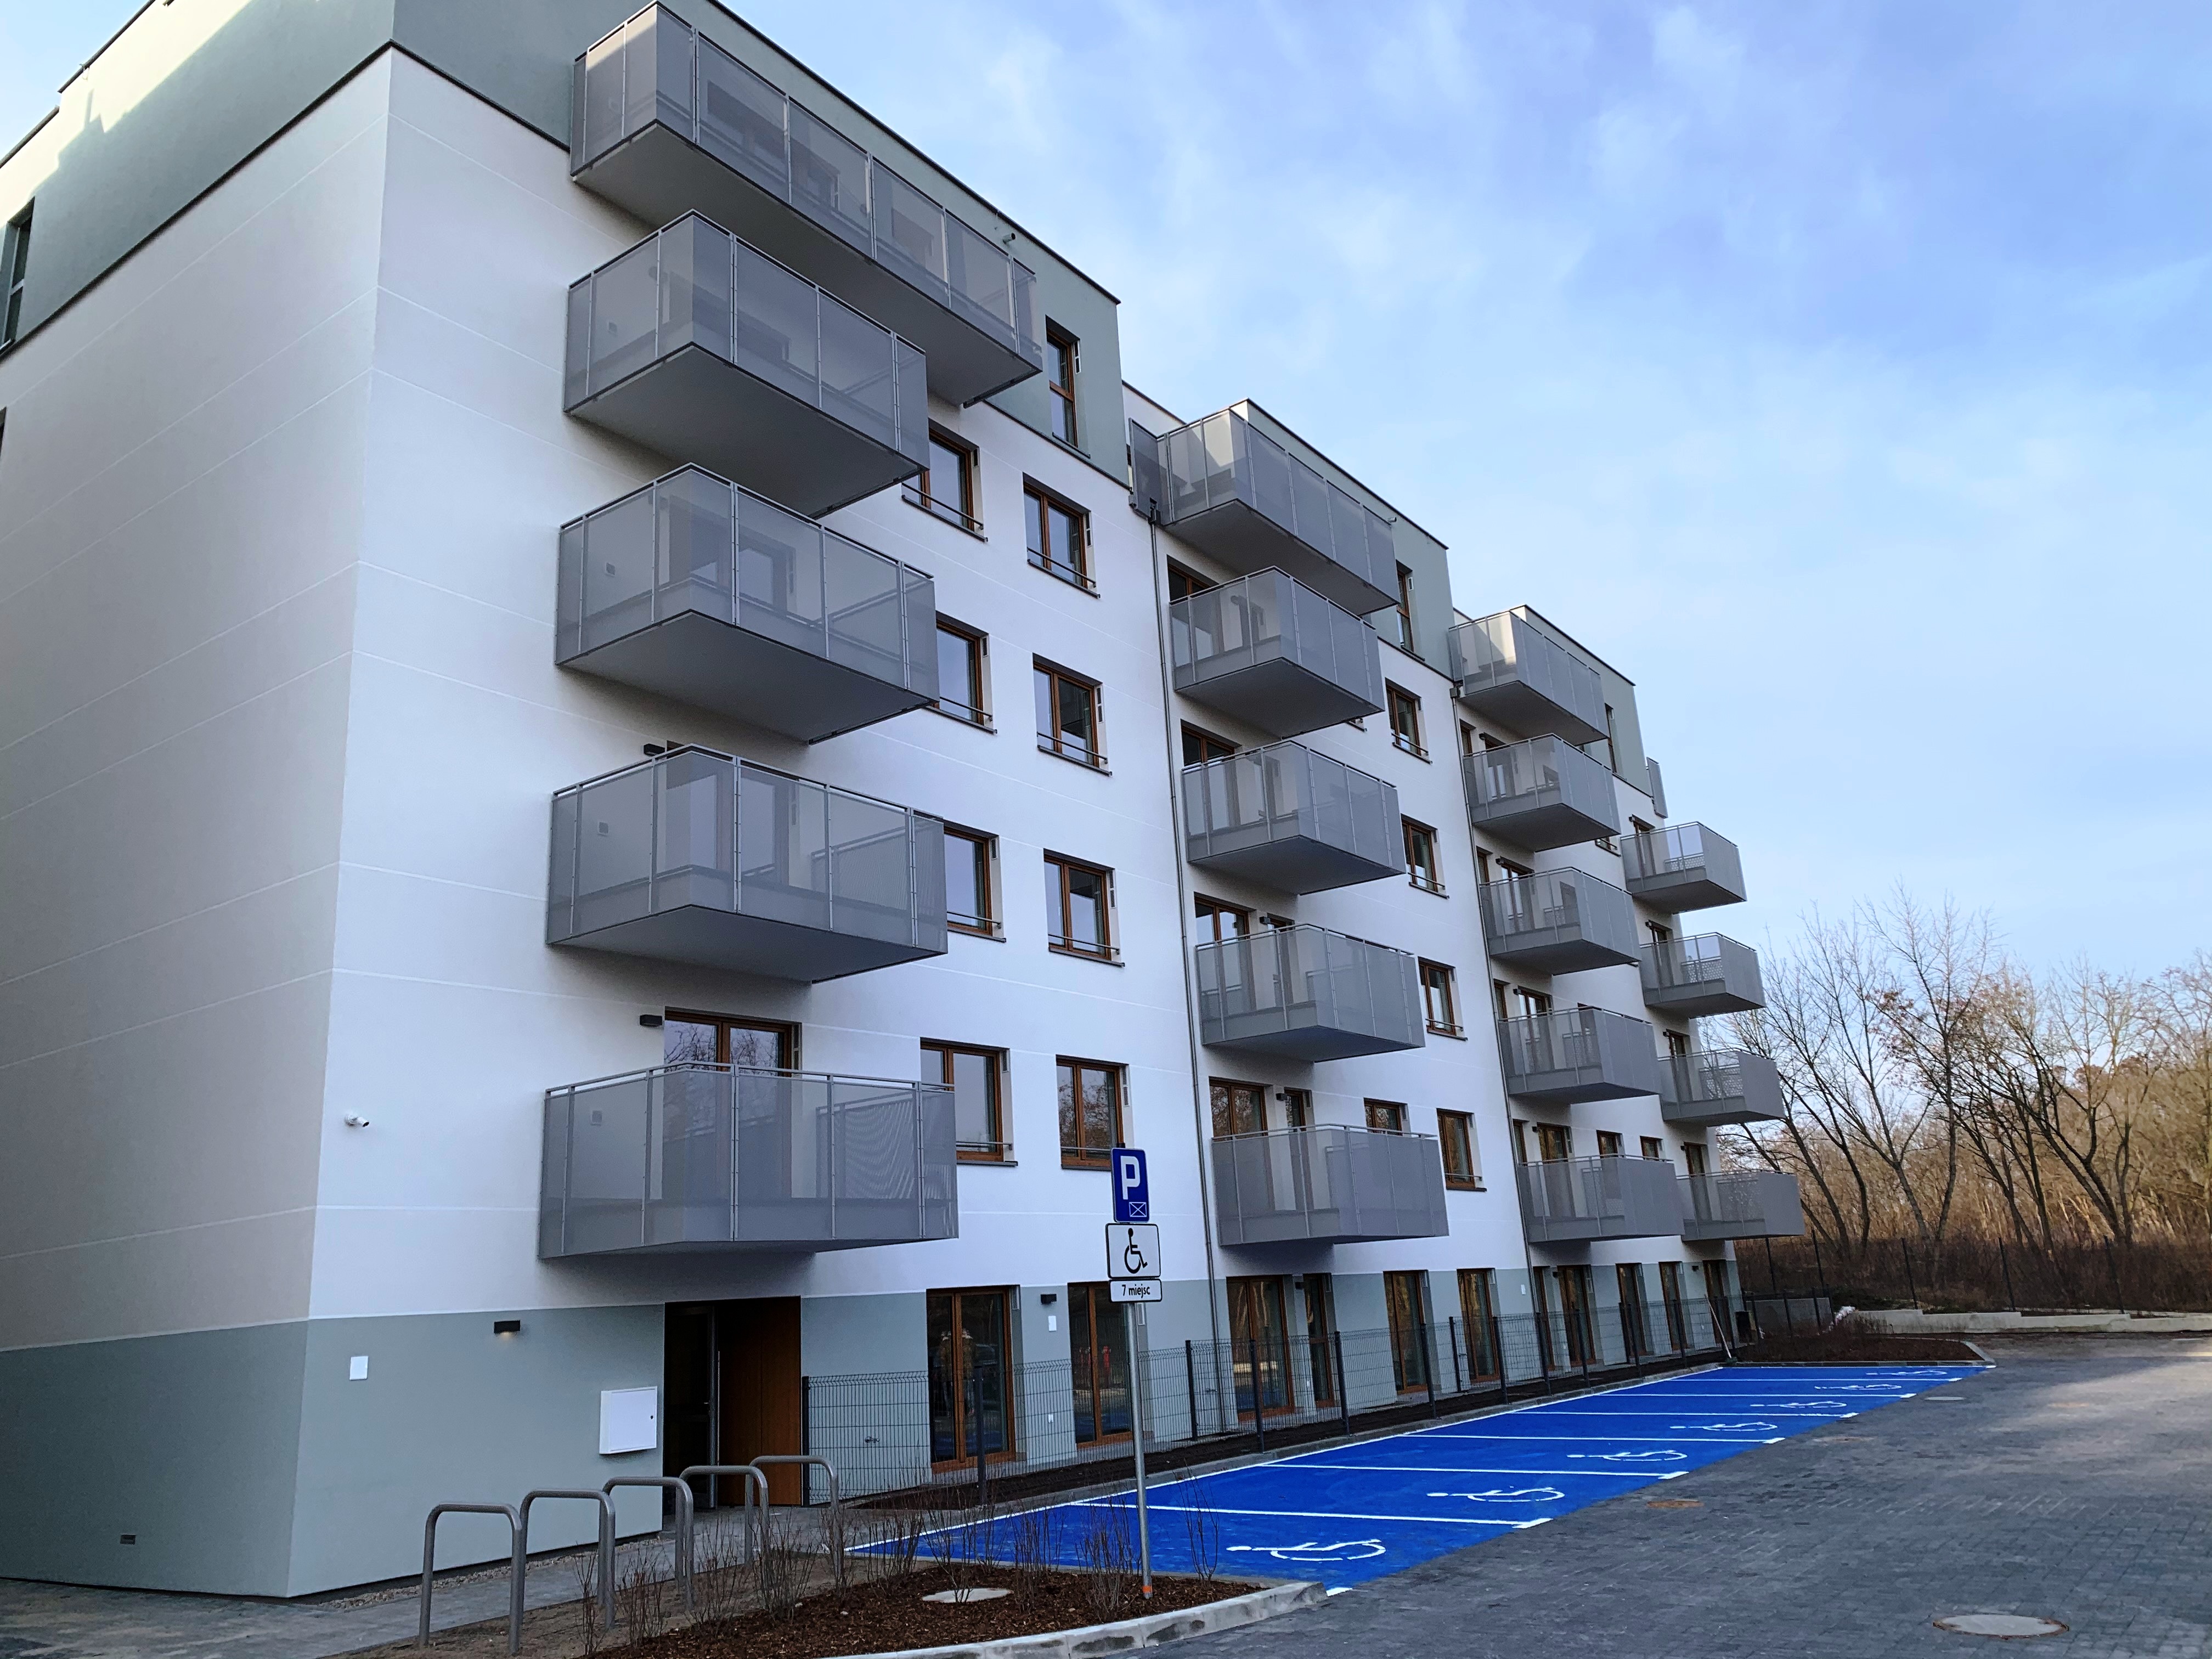 Osiedle mieszkaniowe "FORET" w Warszawie - Bygningskonstruksjon